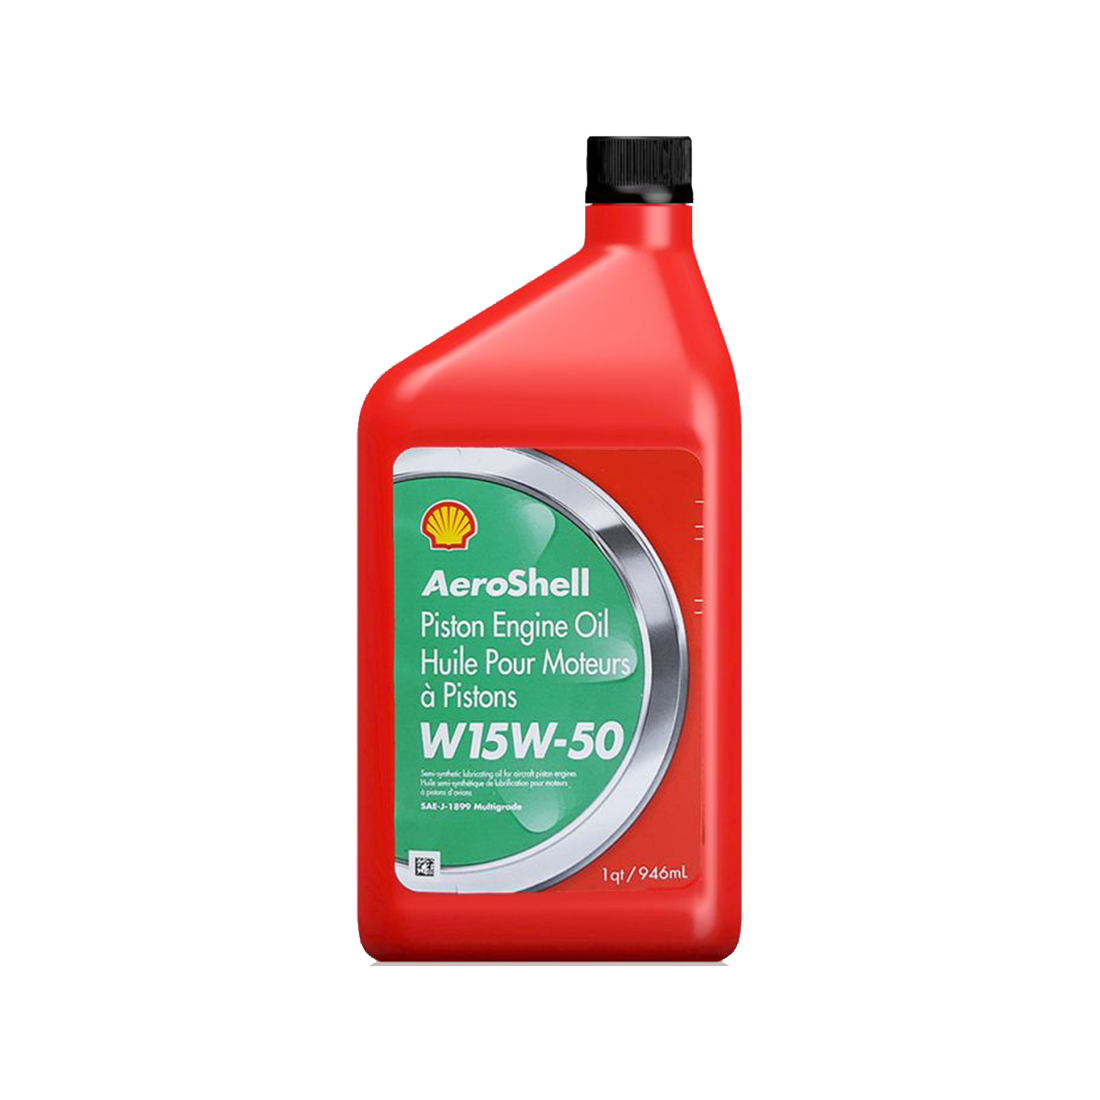 Motorolja Shell Aeroshell Oil W 15W-50, 6-pack 1QT/946 ml